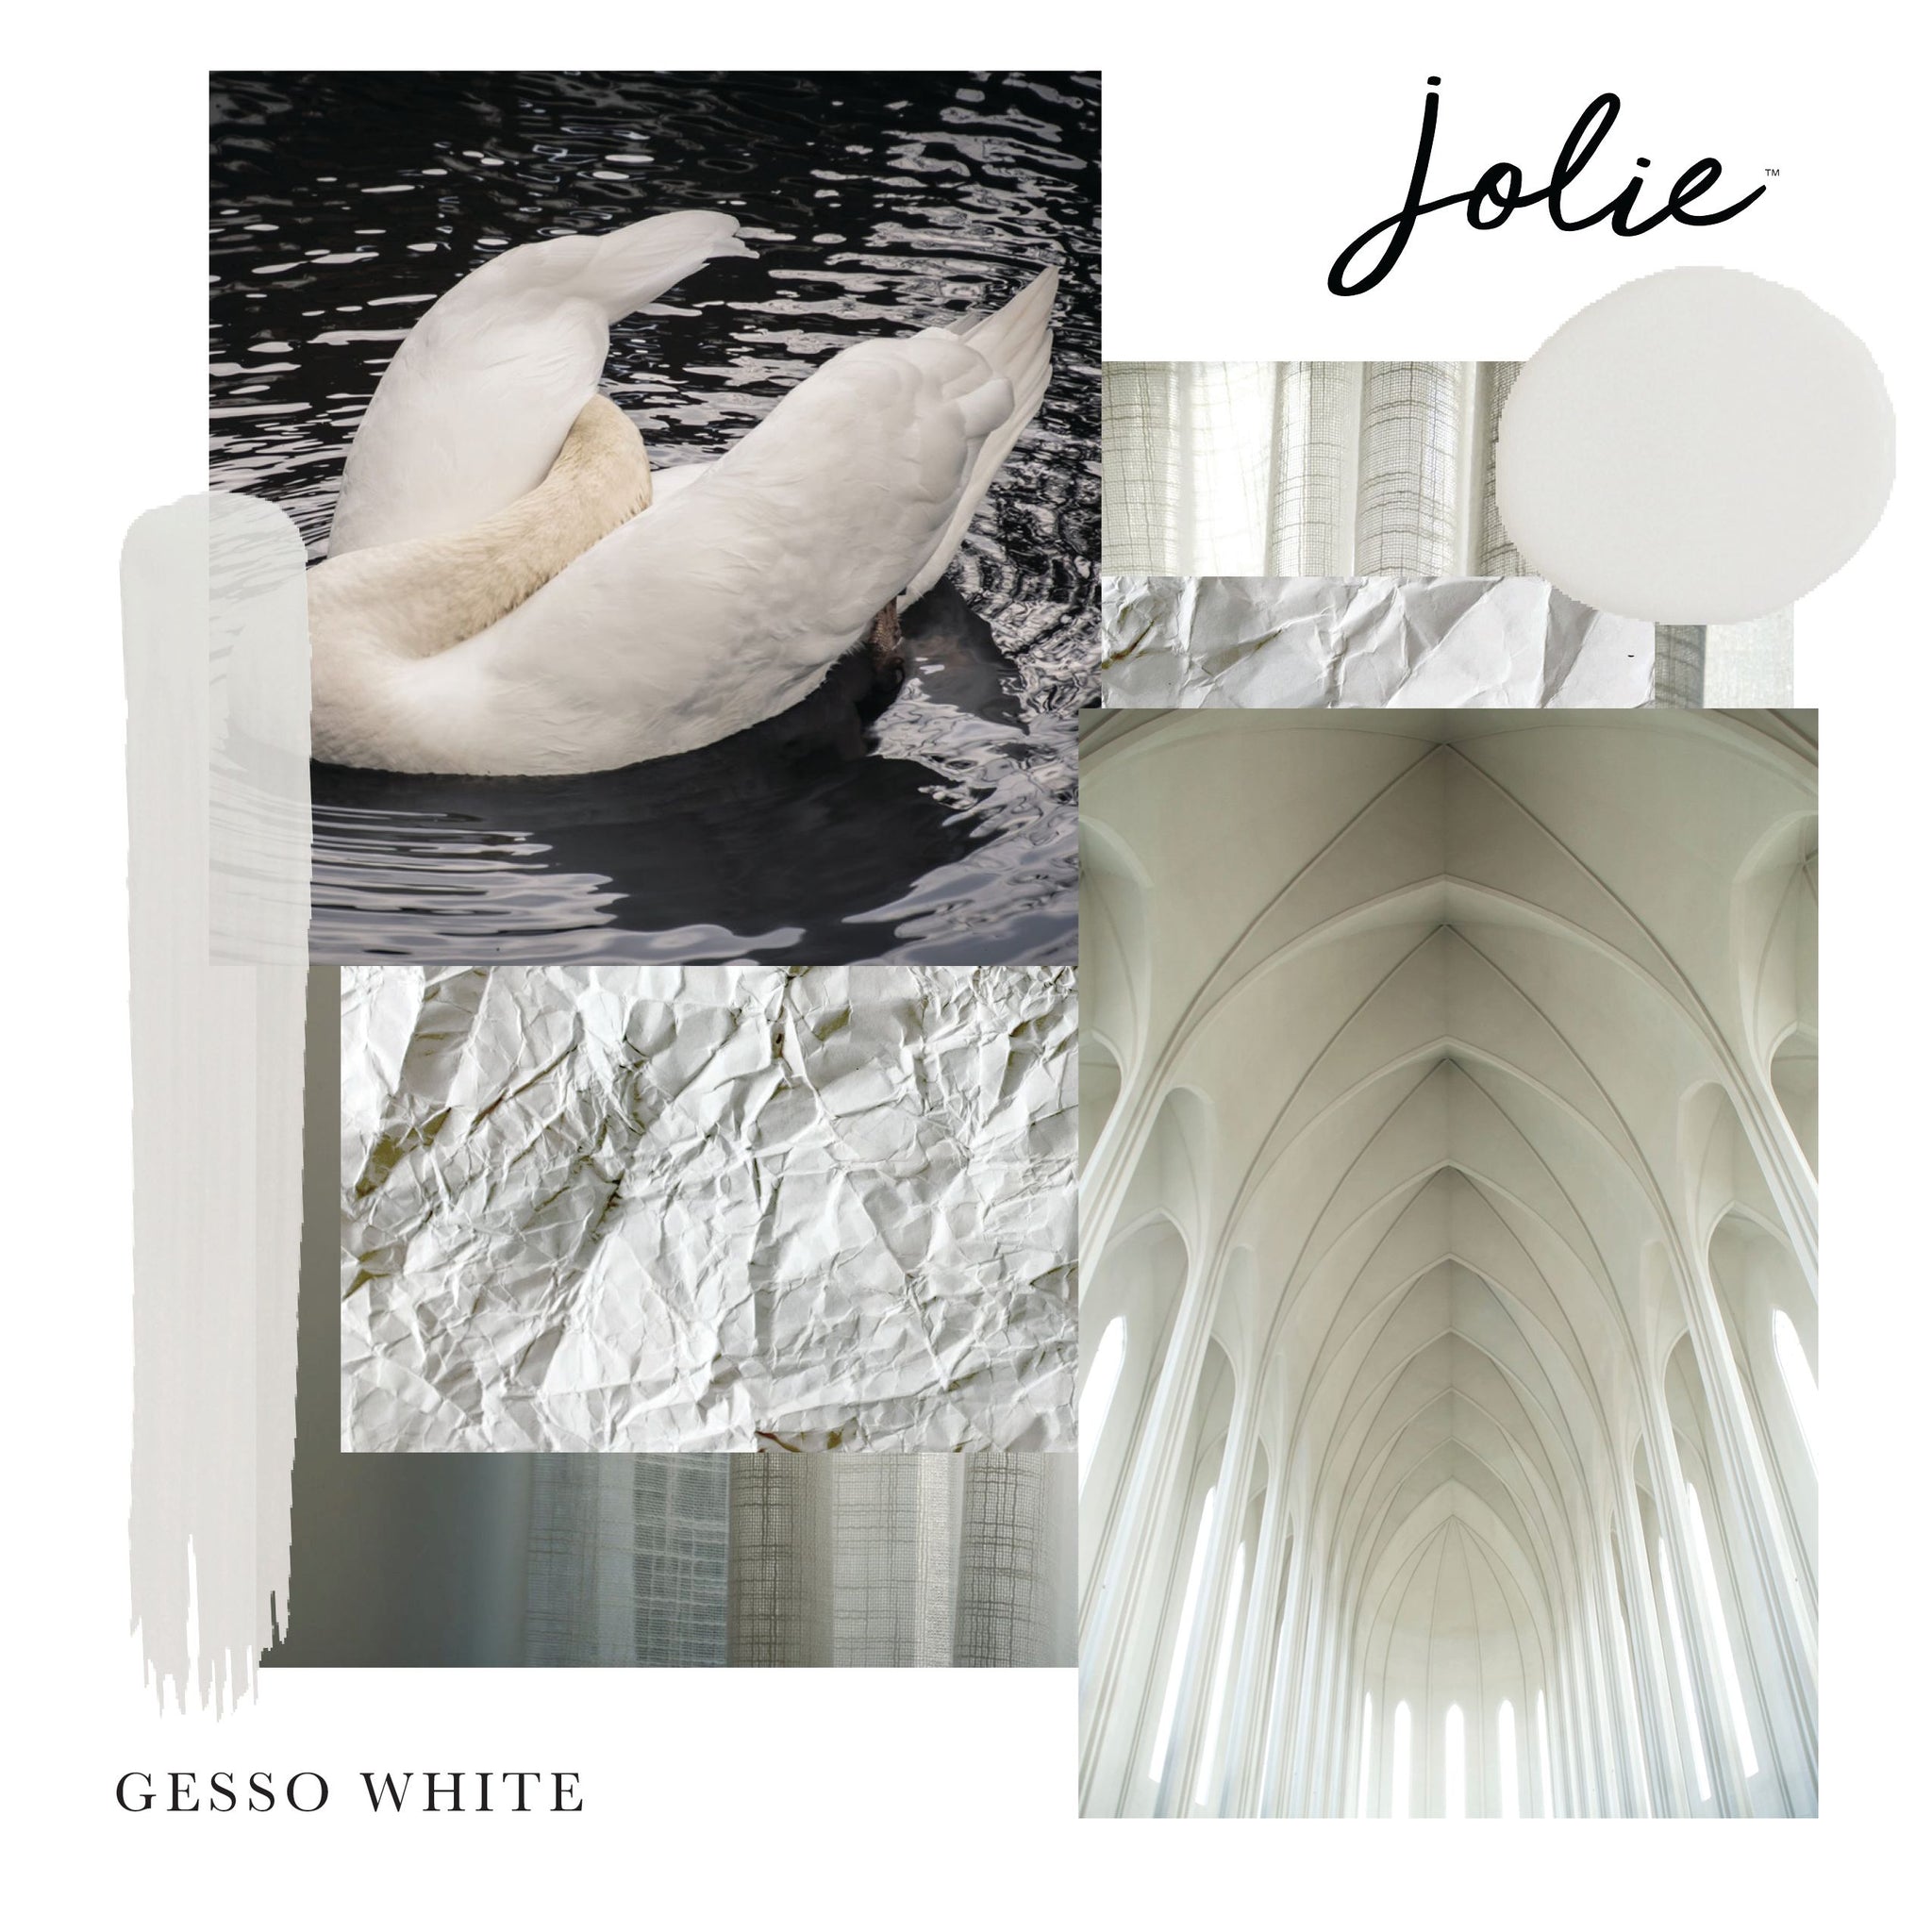 Jolie Paint - Gesso White – Foxtrot Home